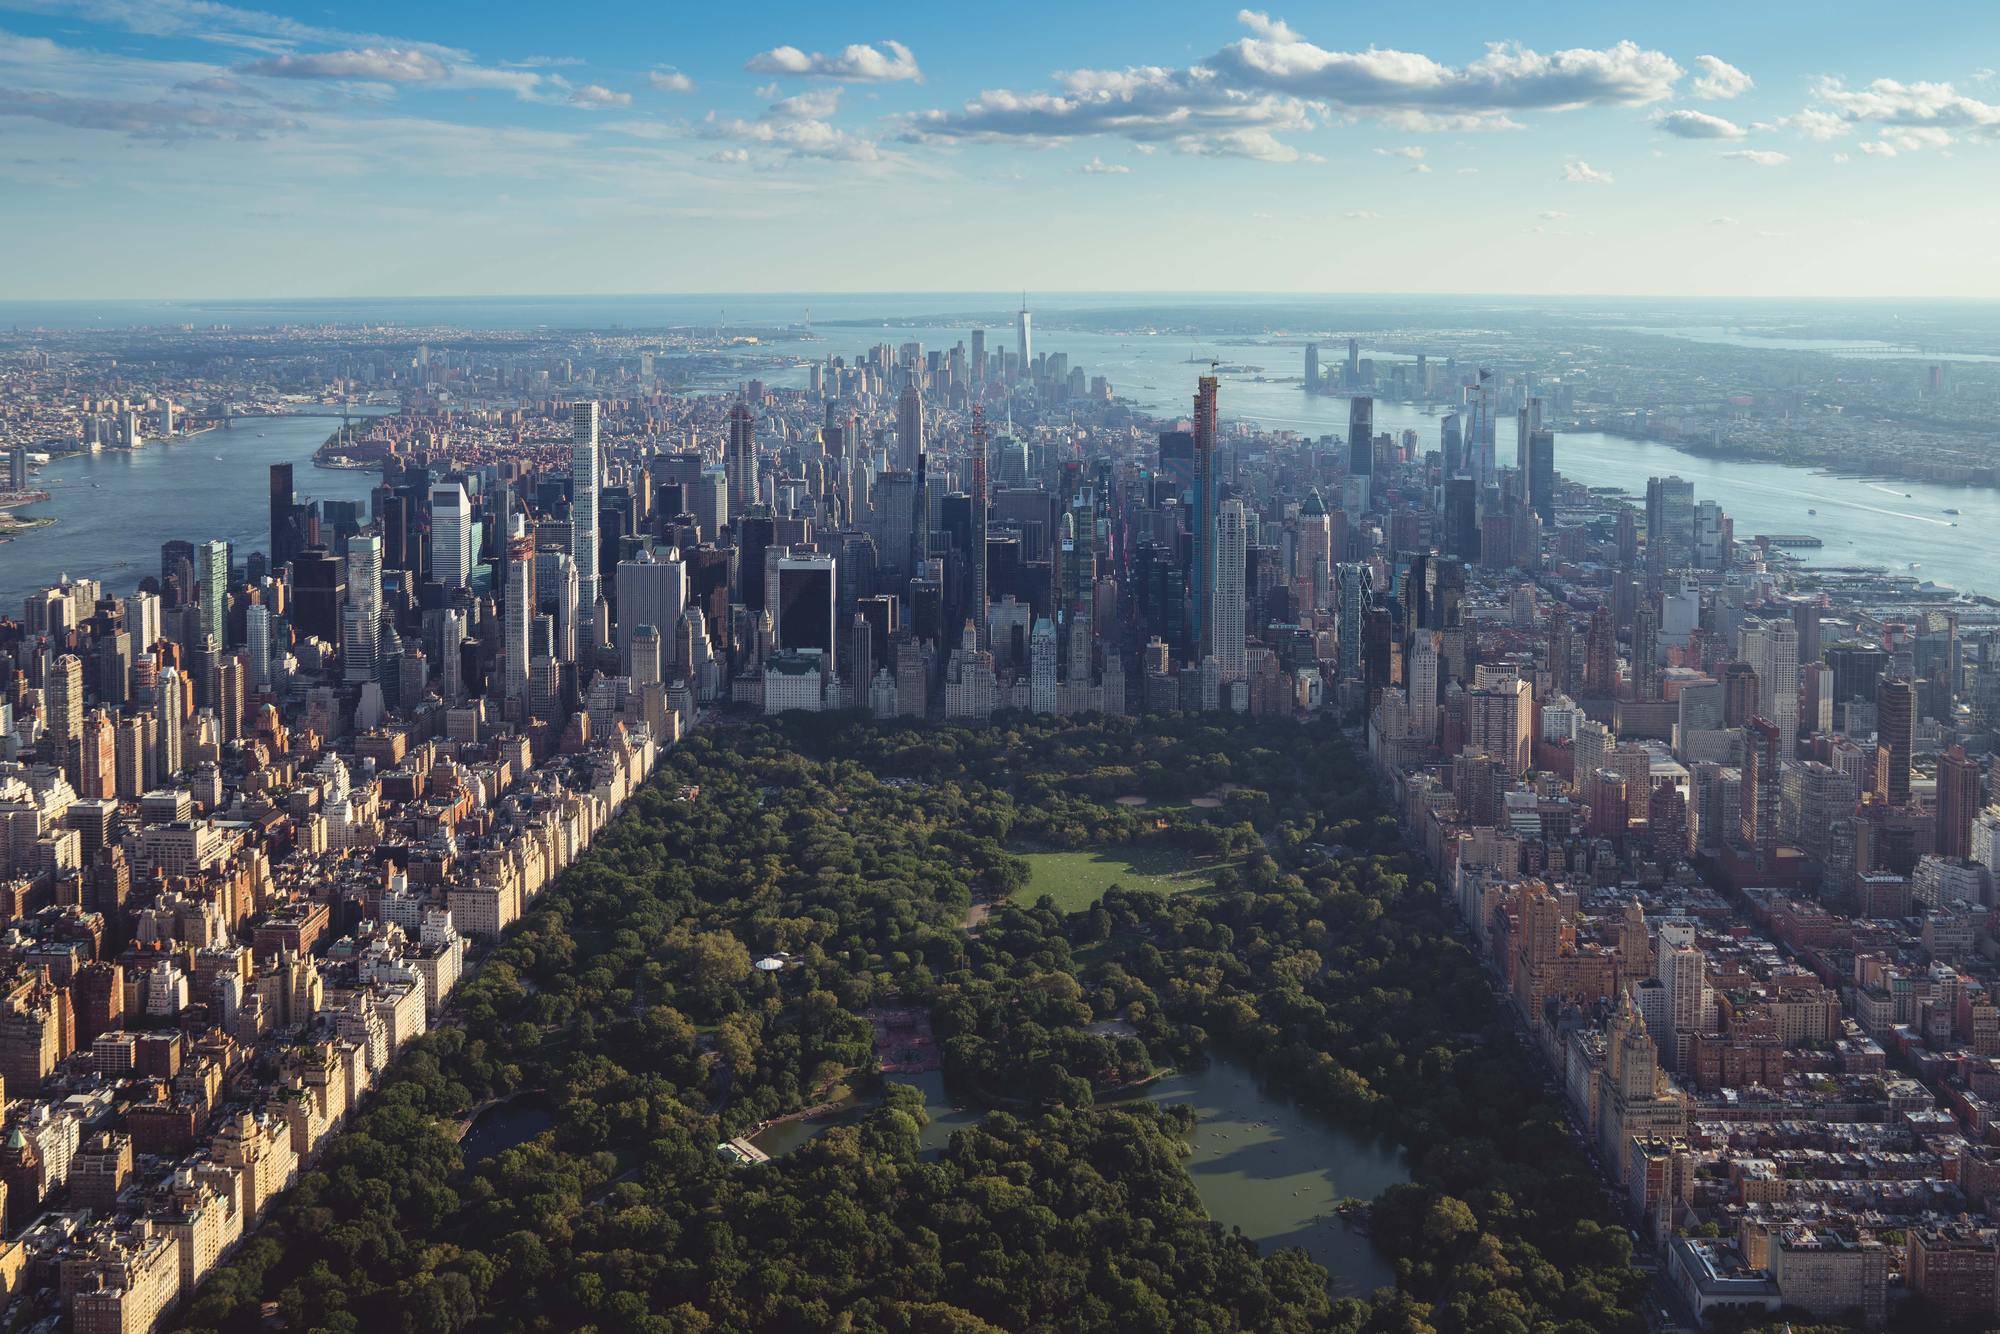 Invertir en espacios públicos limpios y verdes para todos los neoyorquinos